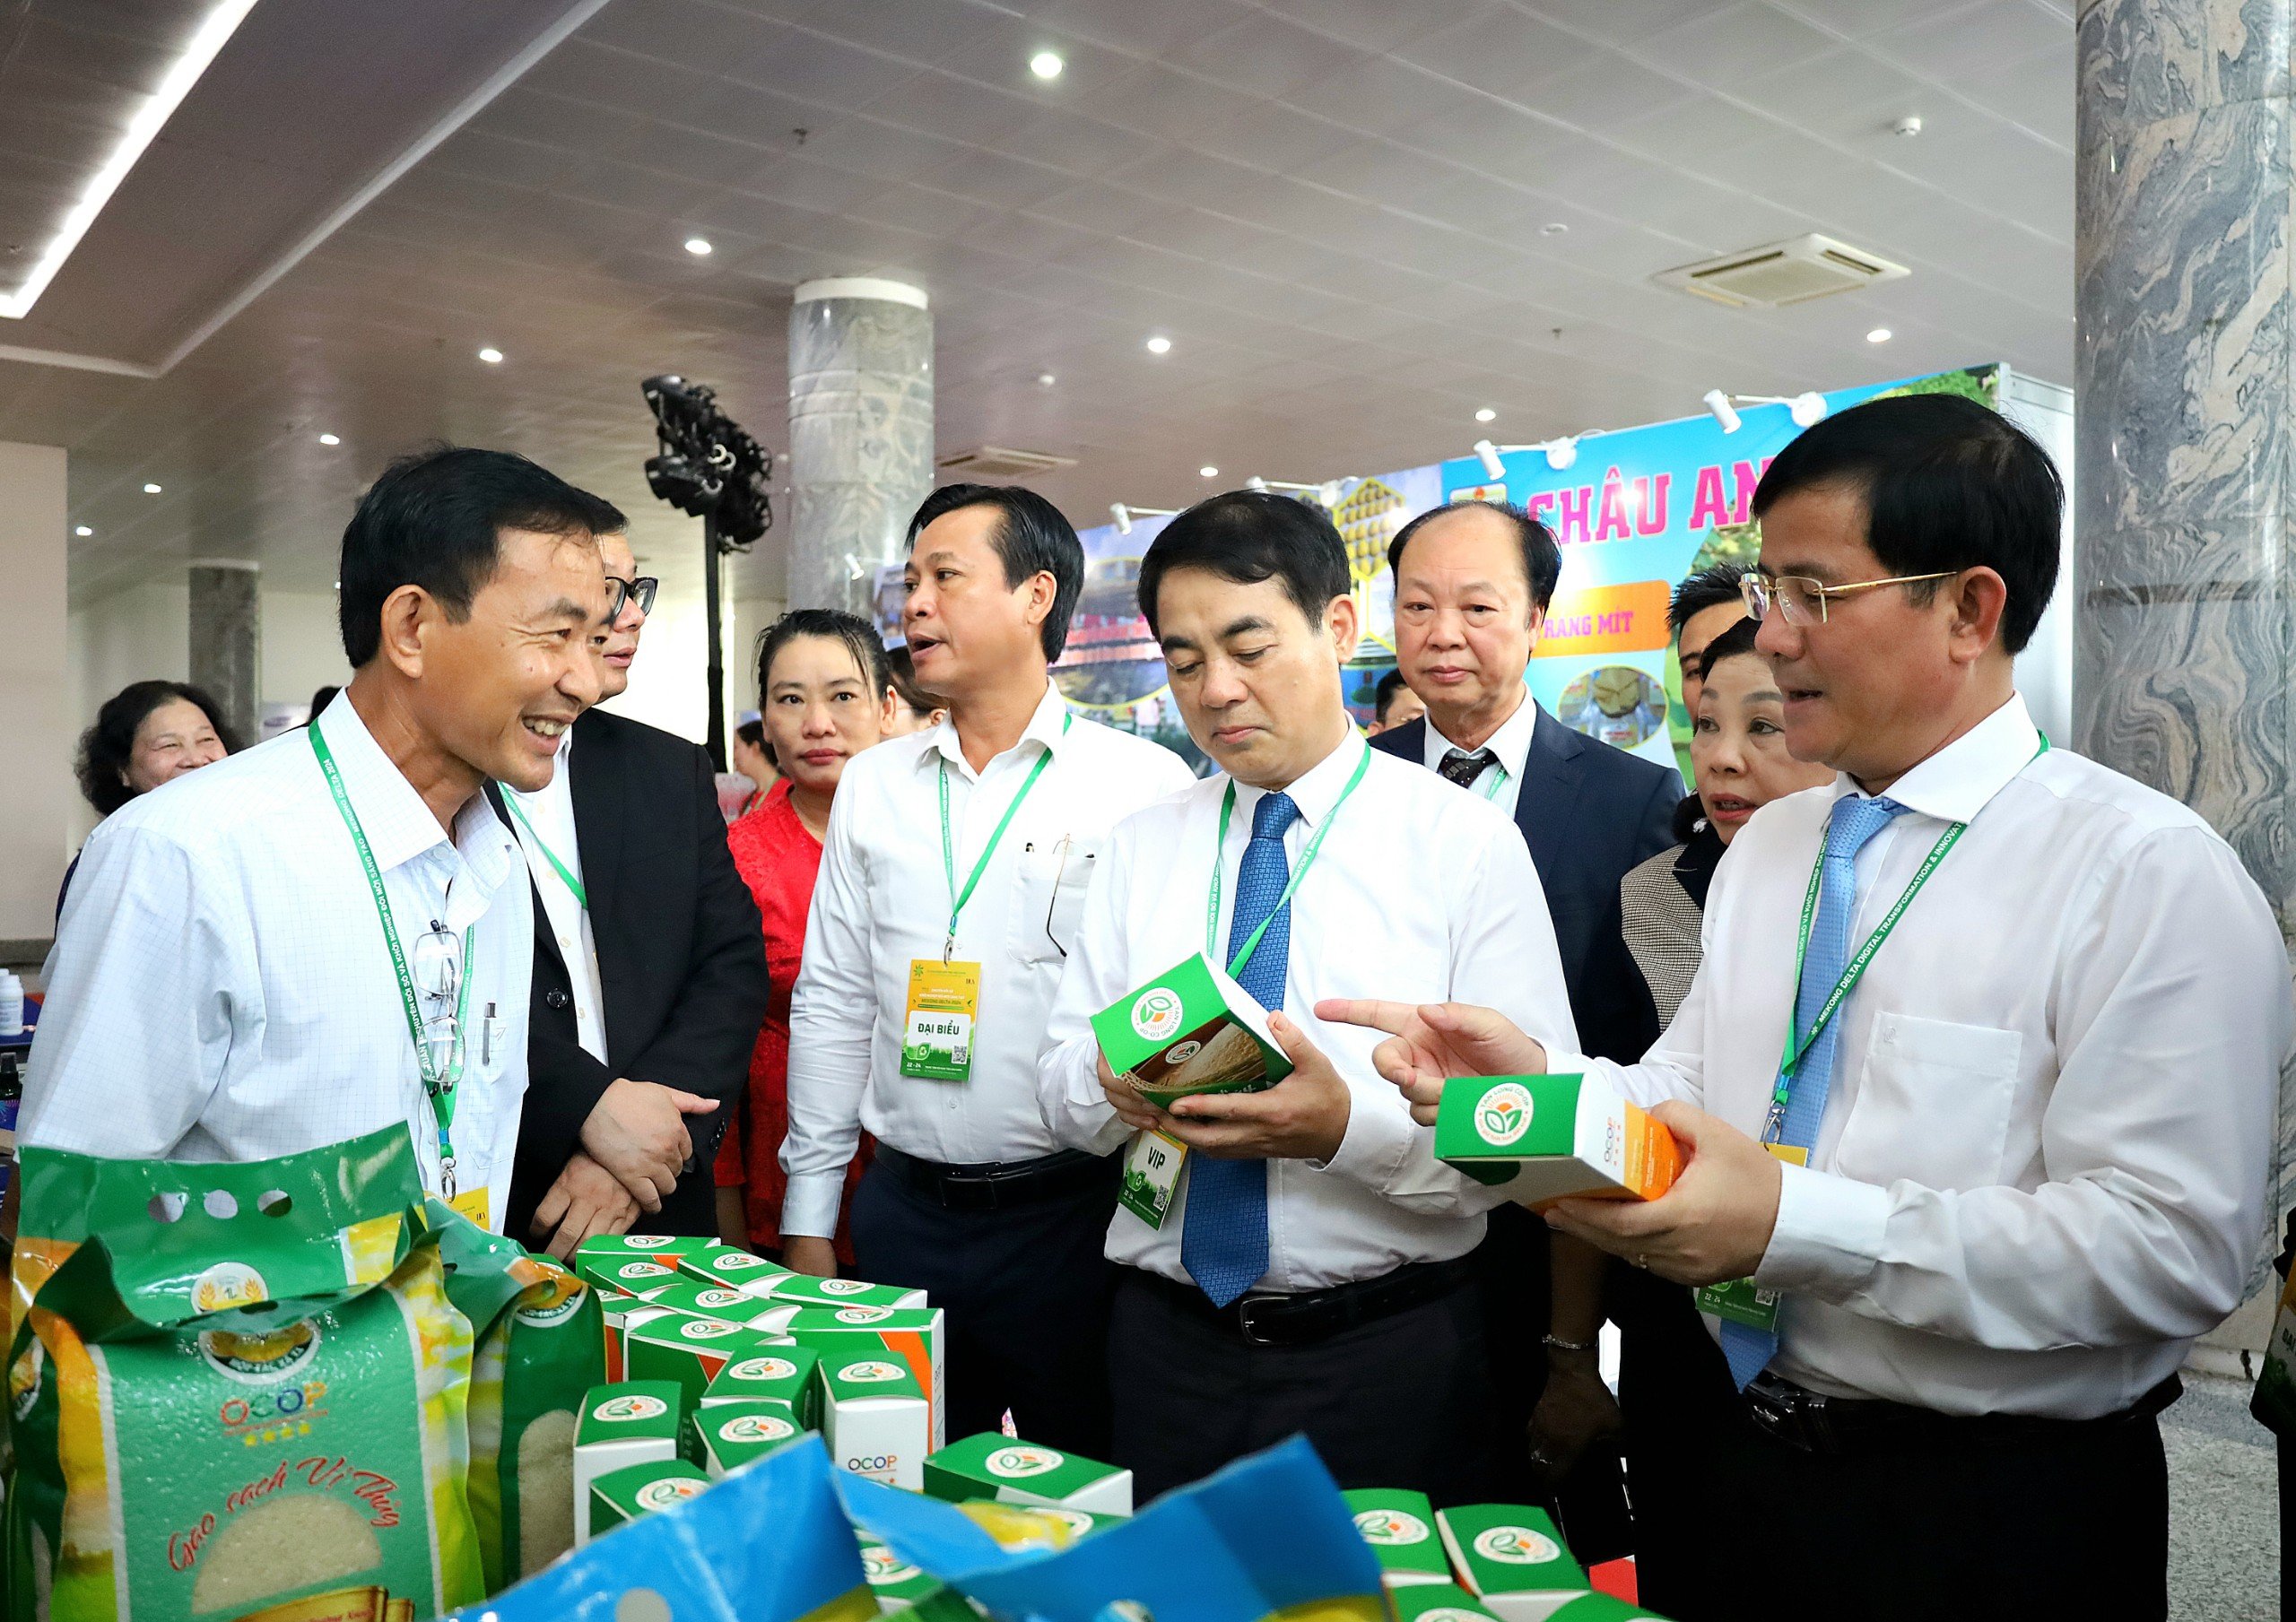 Ông Nghiêm Xuân Thành - Ủy viên BCH Trung ương Đảng, Bí thư Tỉnh ủy Hậu Giang (thứ 2 từ phải qua) xem các sản phẩm trưng bày.